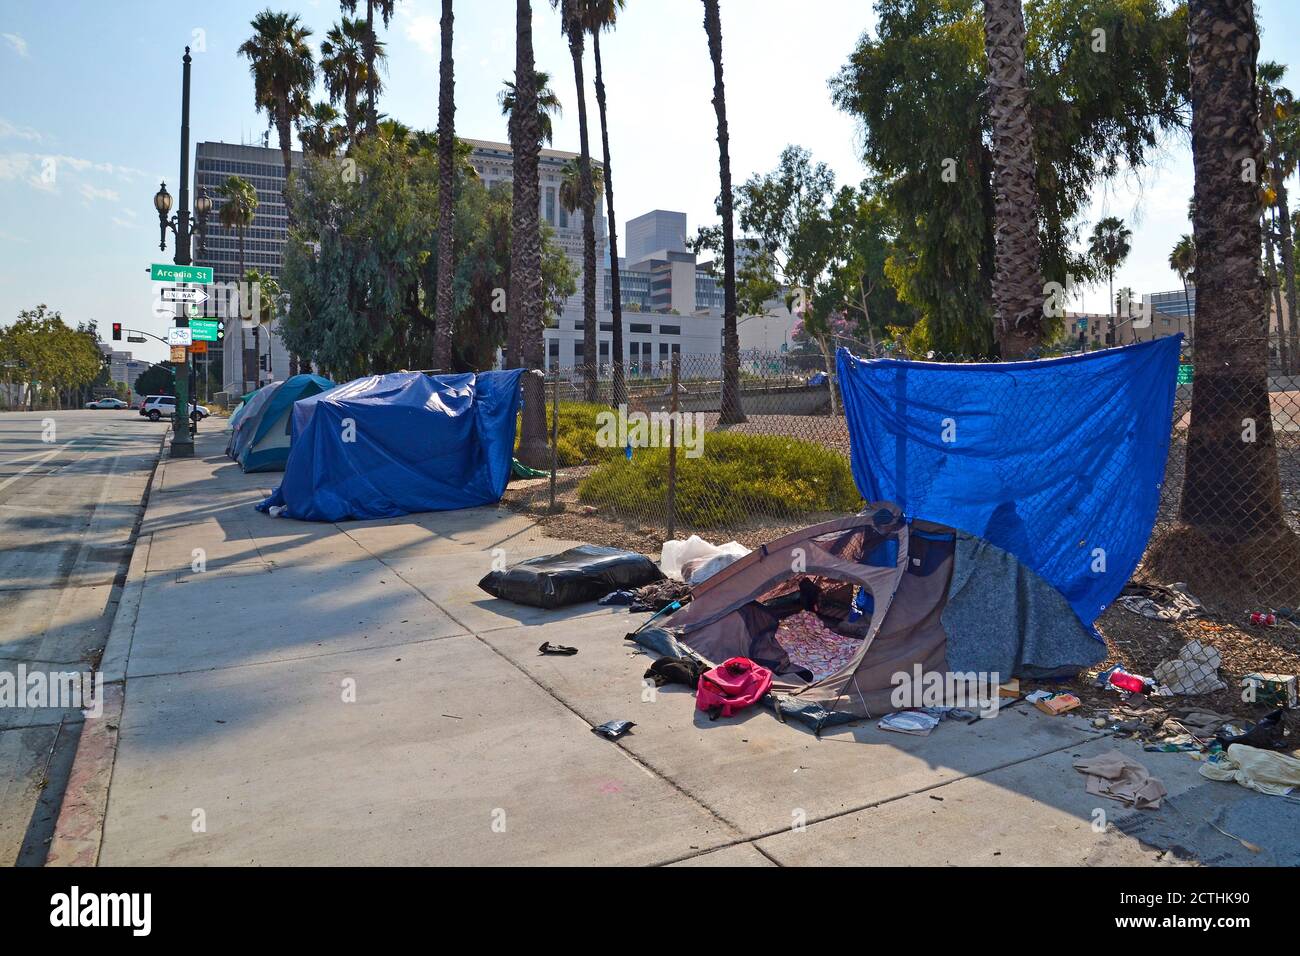 Los Angeles, CA, USA - 22 août 2020: Les sans-abri non identifiés vivent dans des tentes dans la rue de LA ville de LOS Angeles, des lacunes sociales Banque D'Images